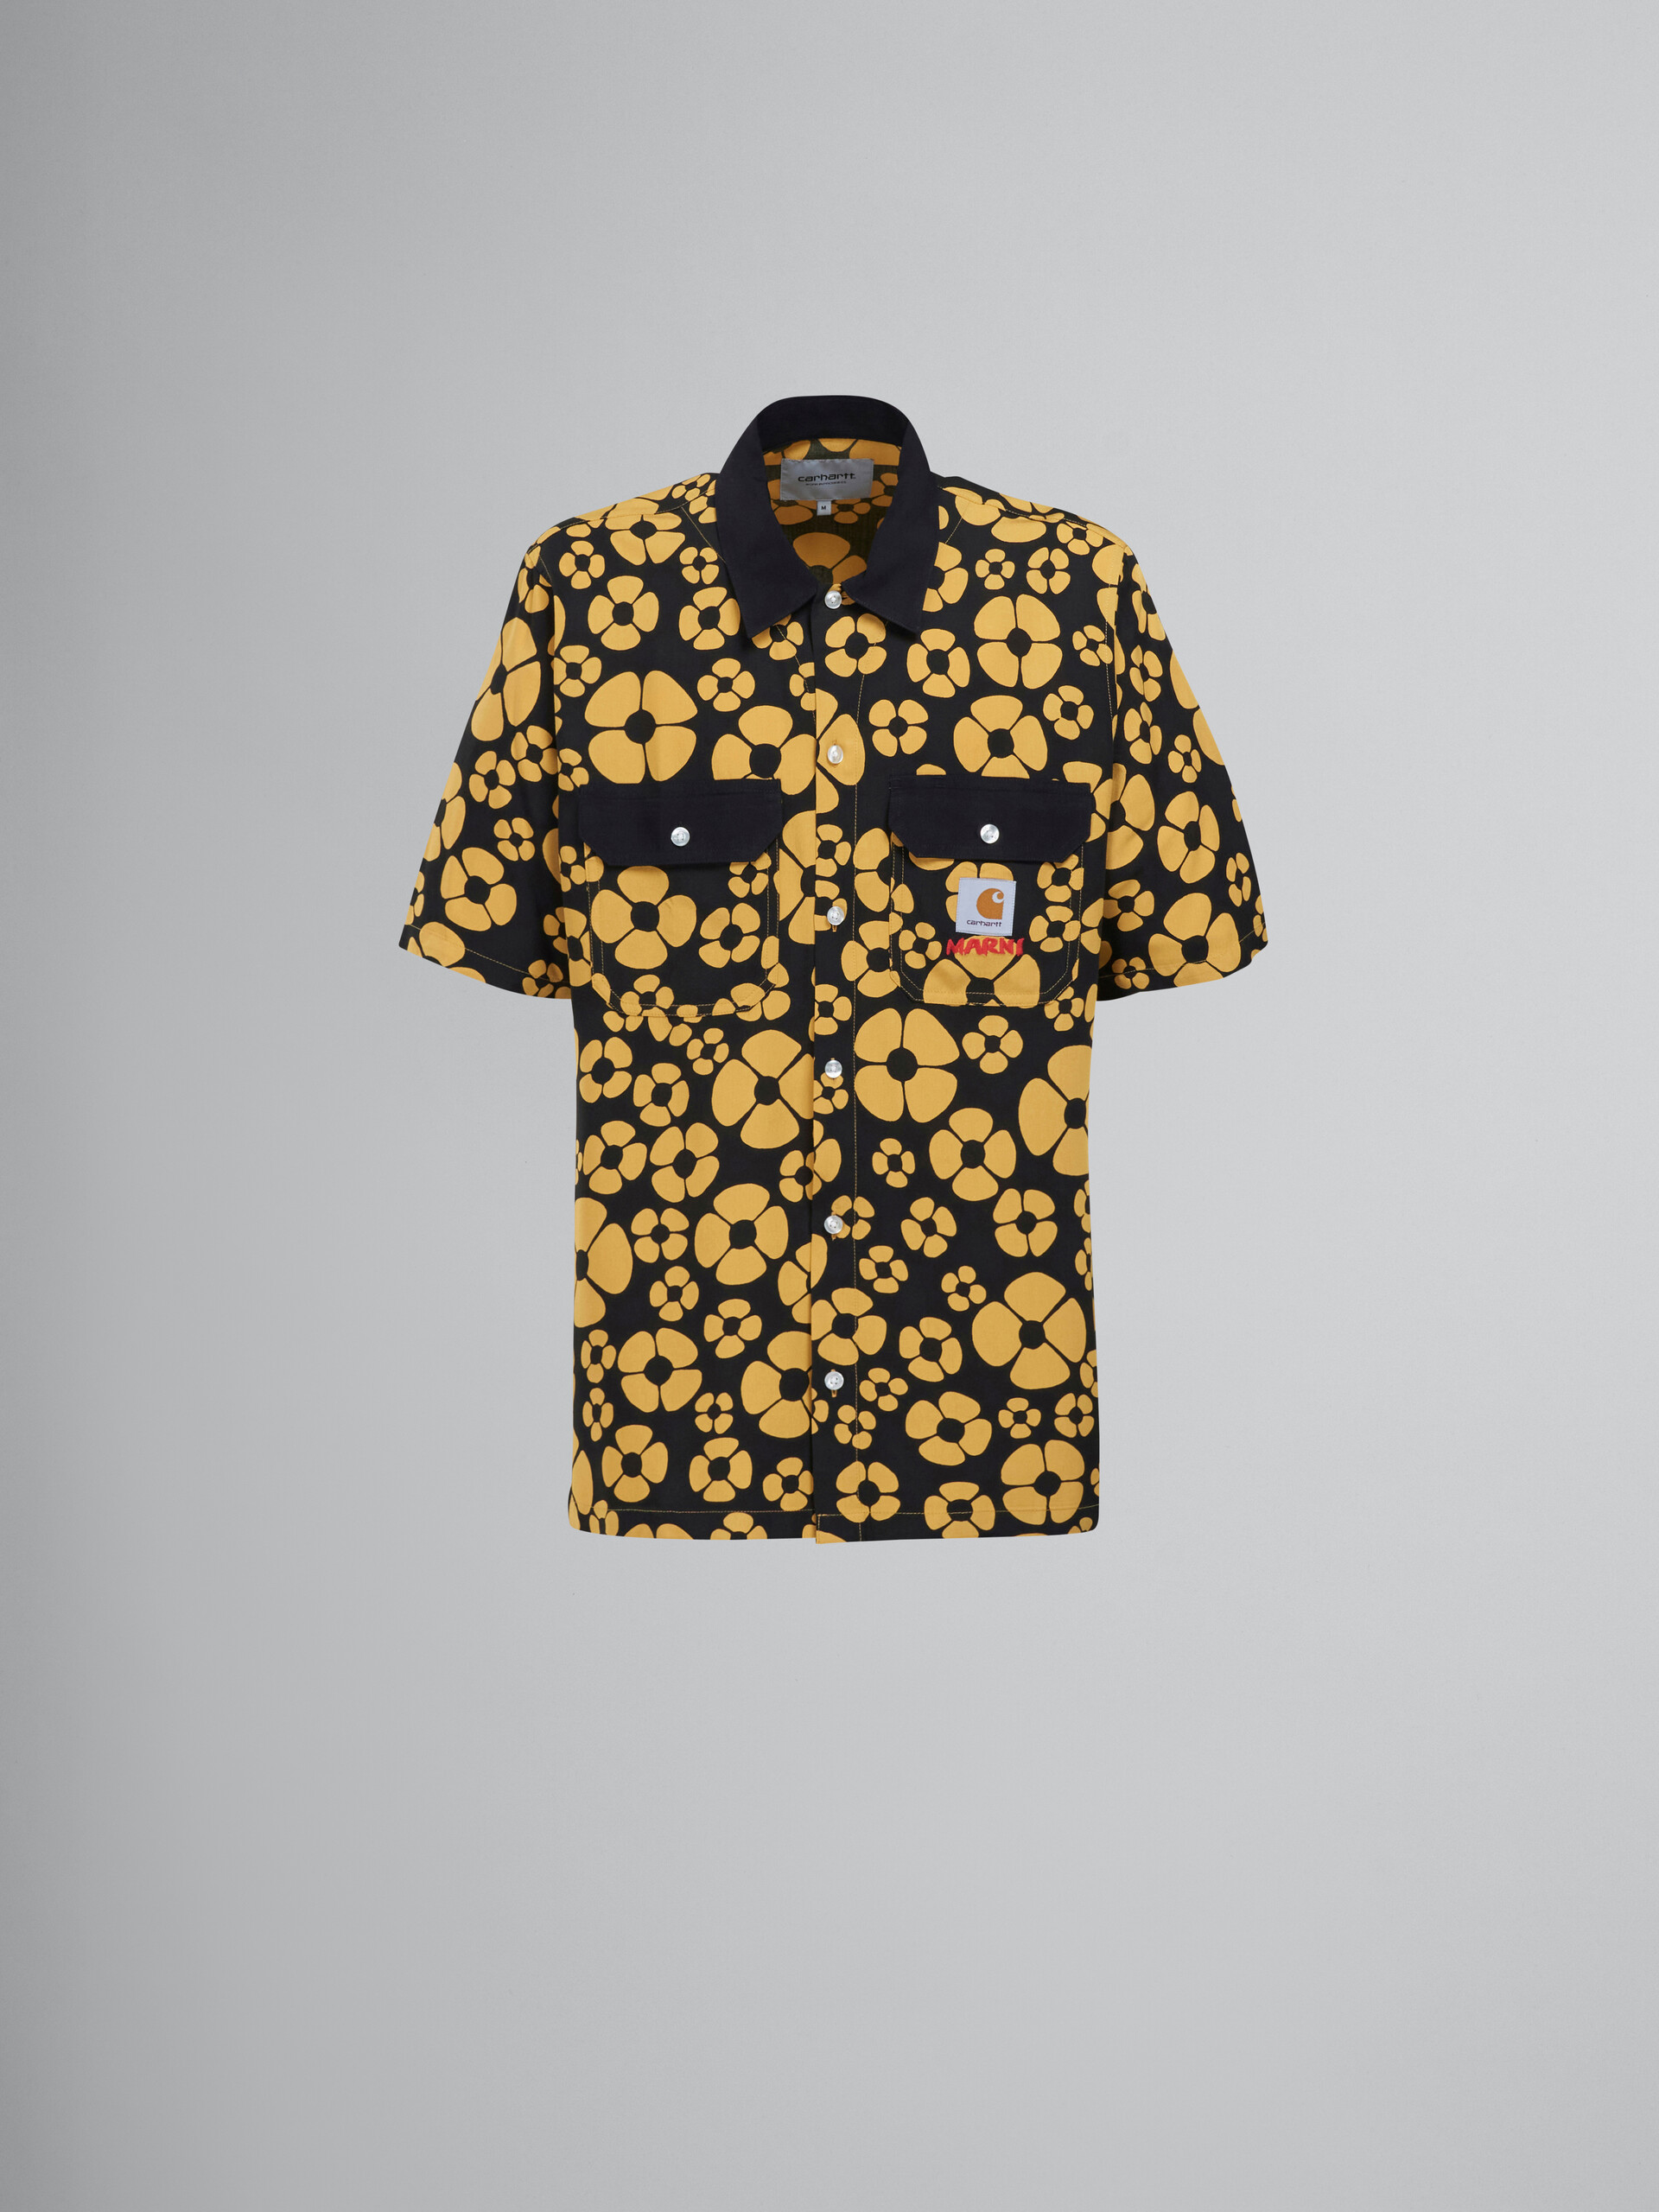 MARNI x CARHARTT WIP - yellow short-sleeved floral shirt - Shirts - Image 1